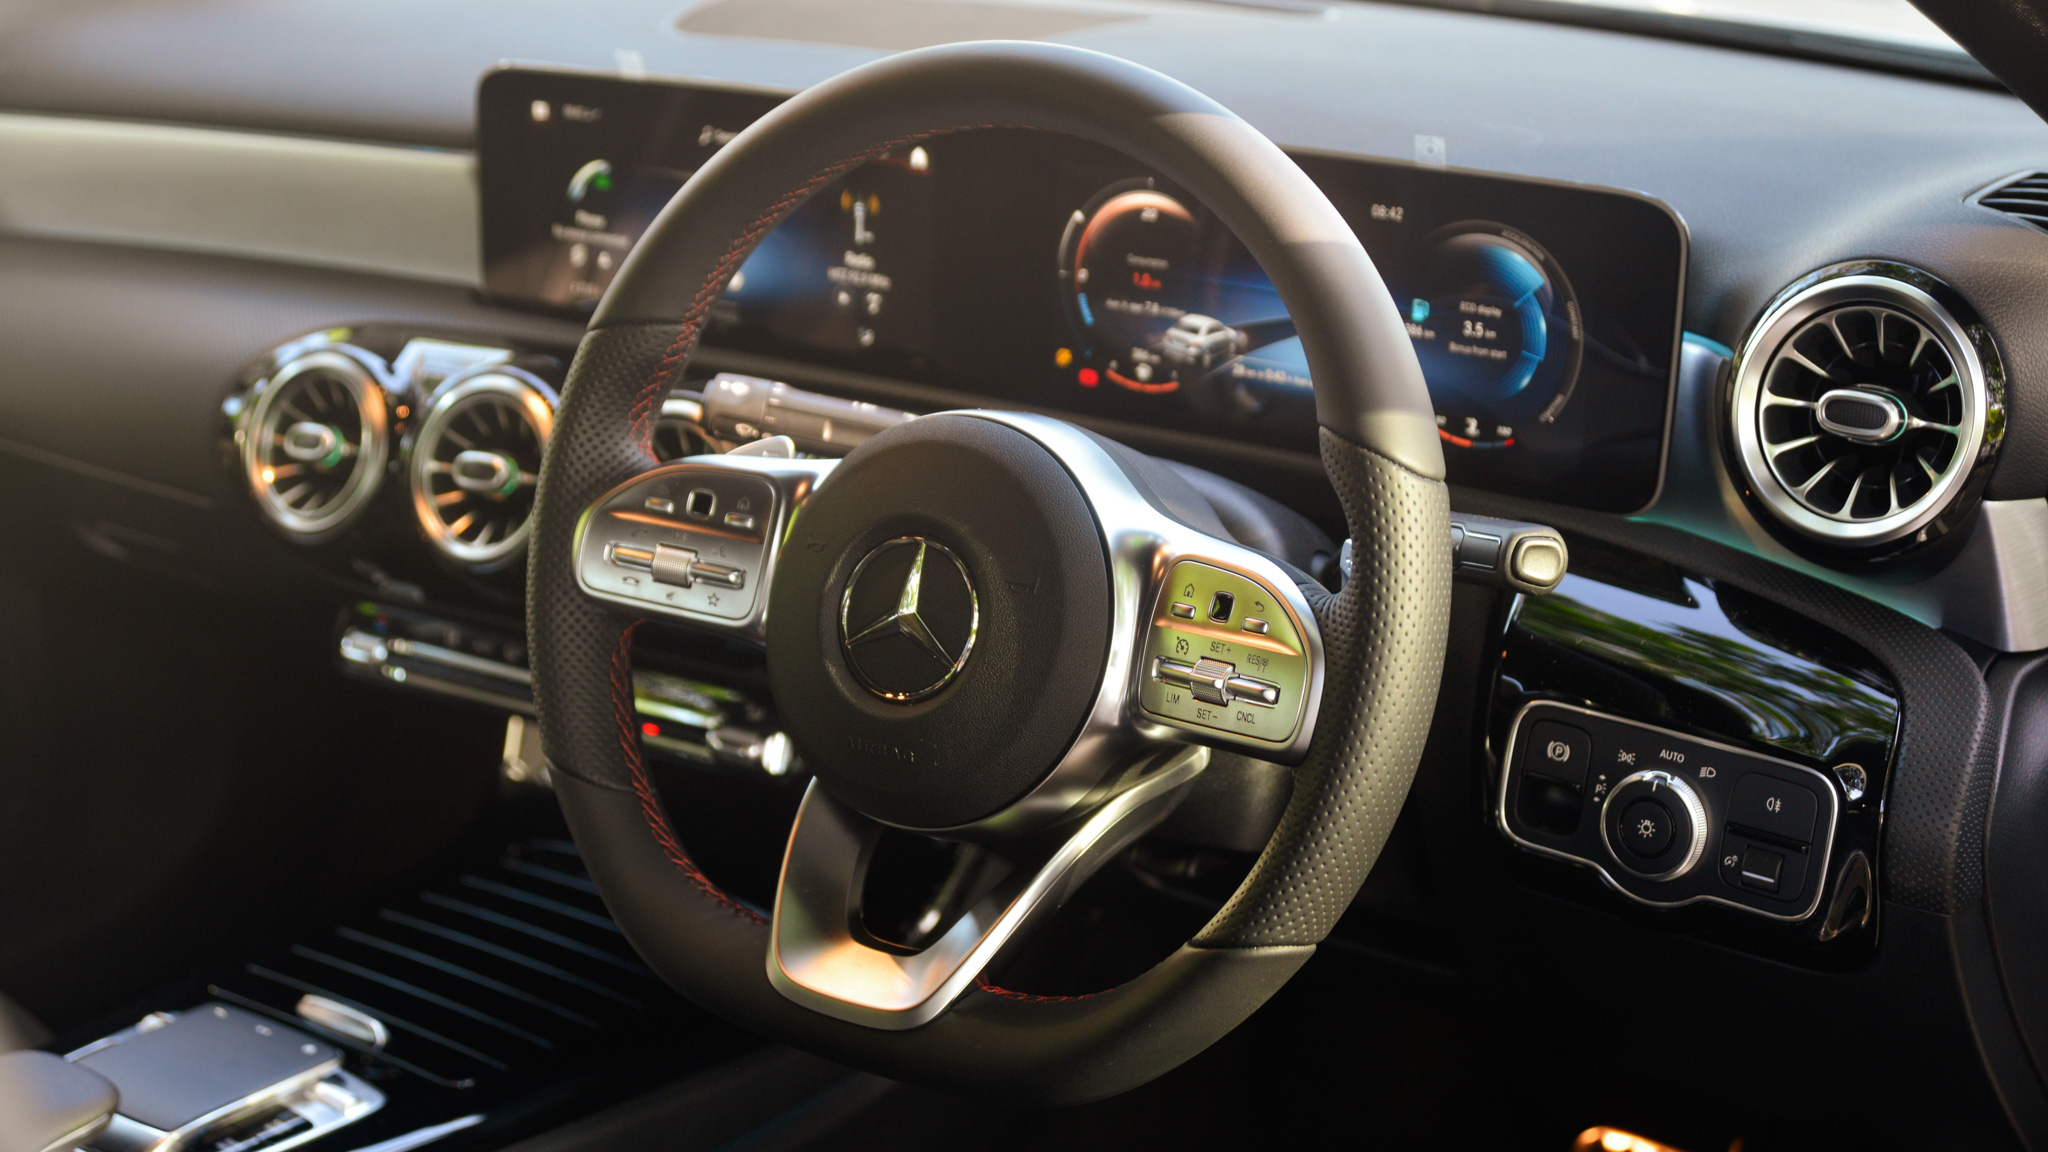 2021 Mercedes-Benz A250 Sedan CBU interior